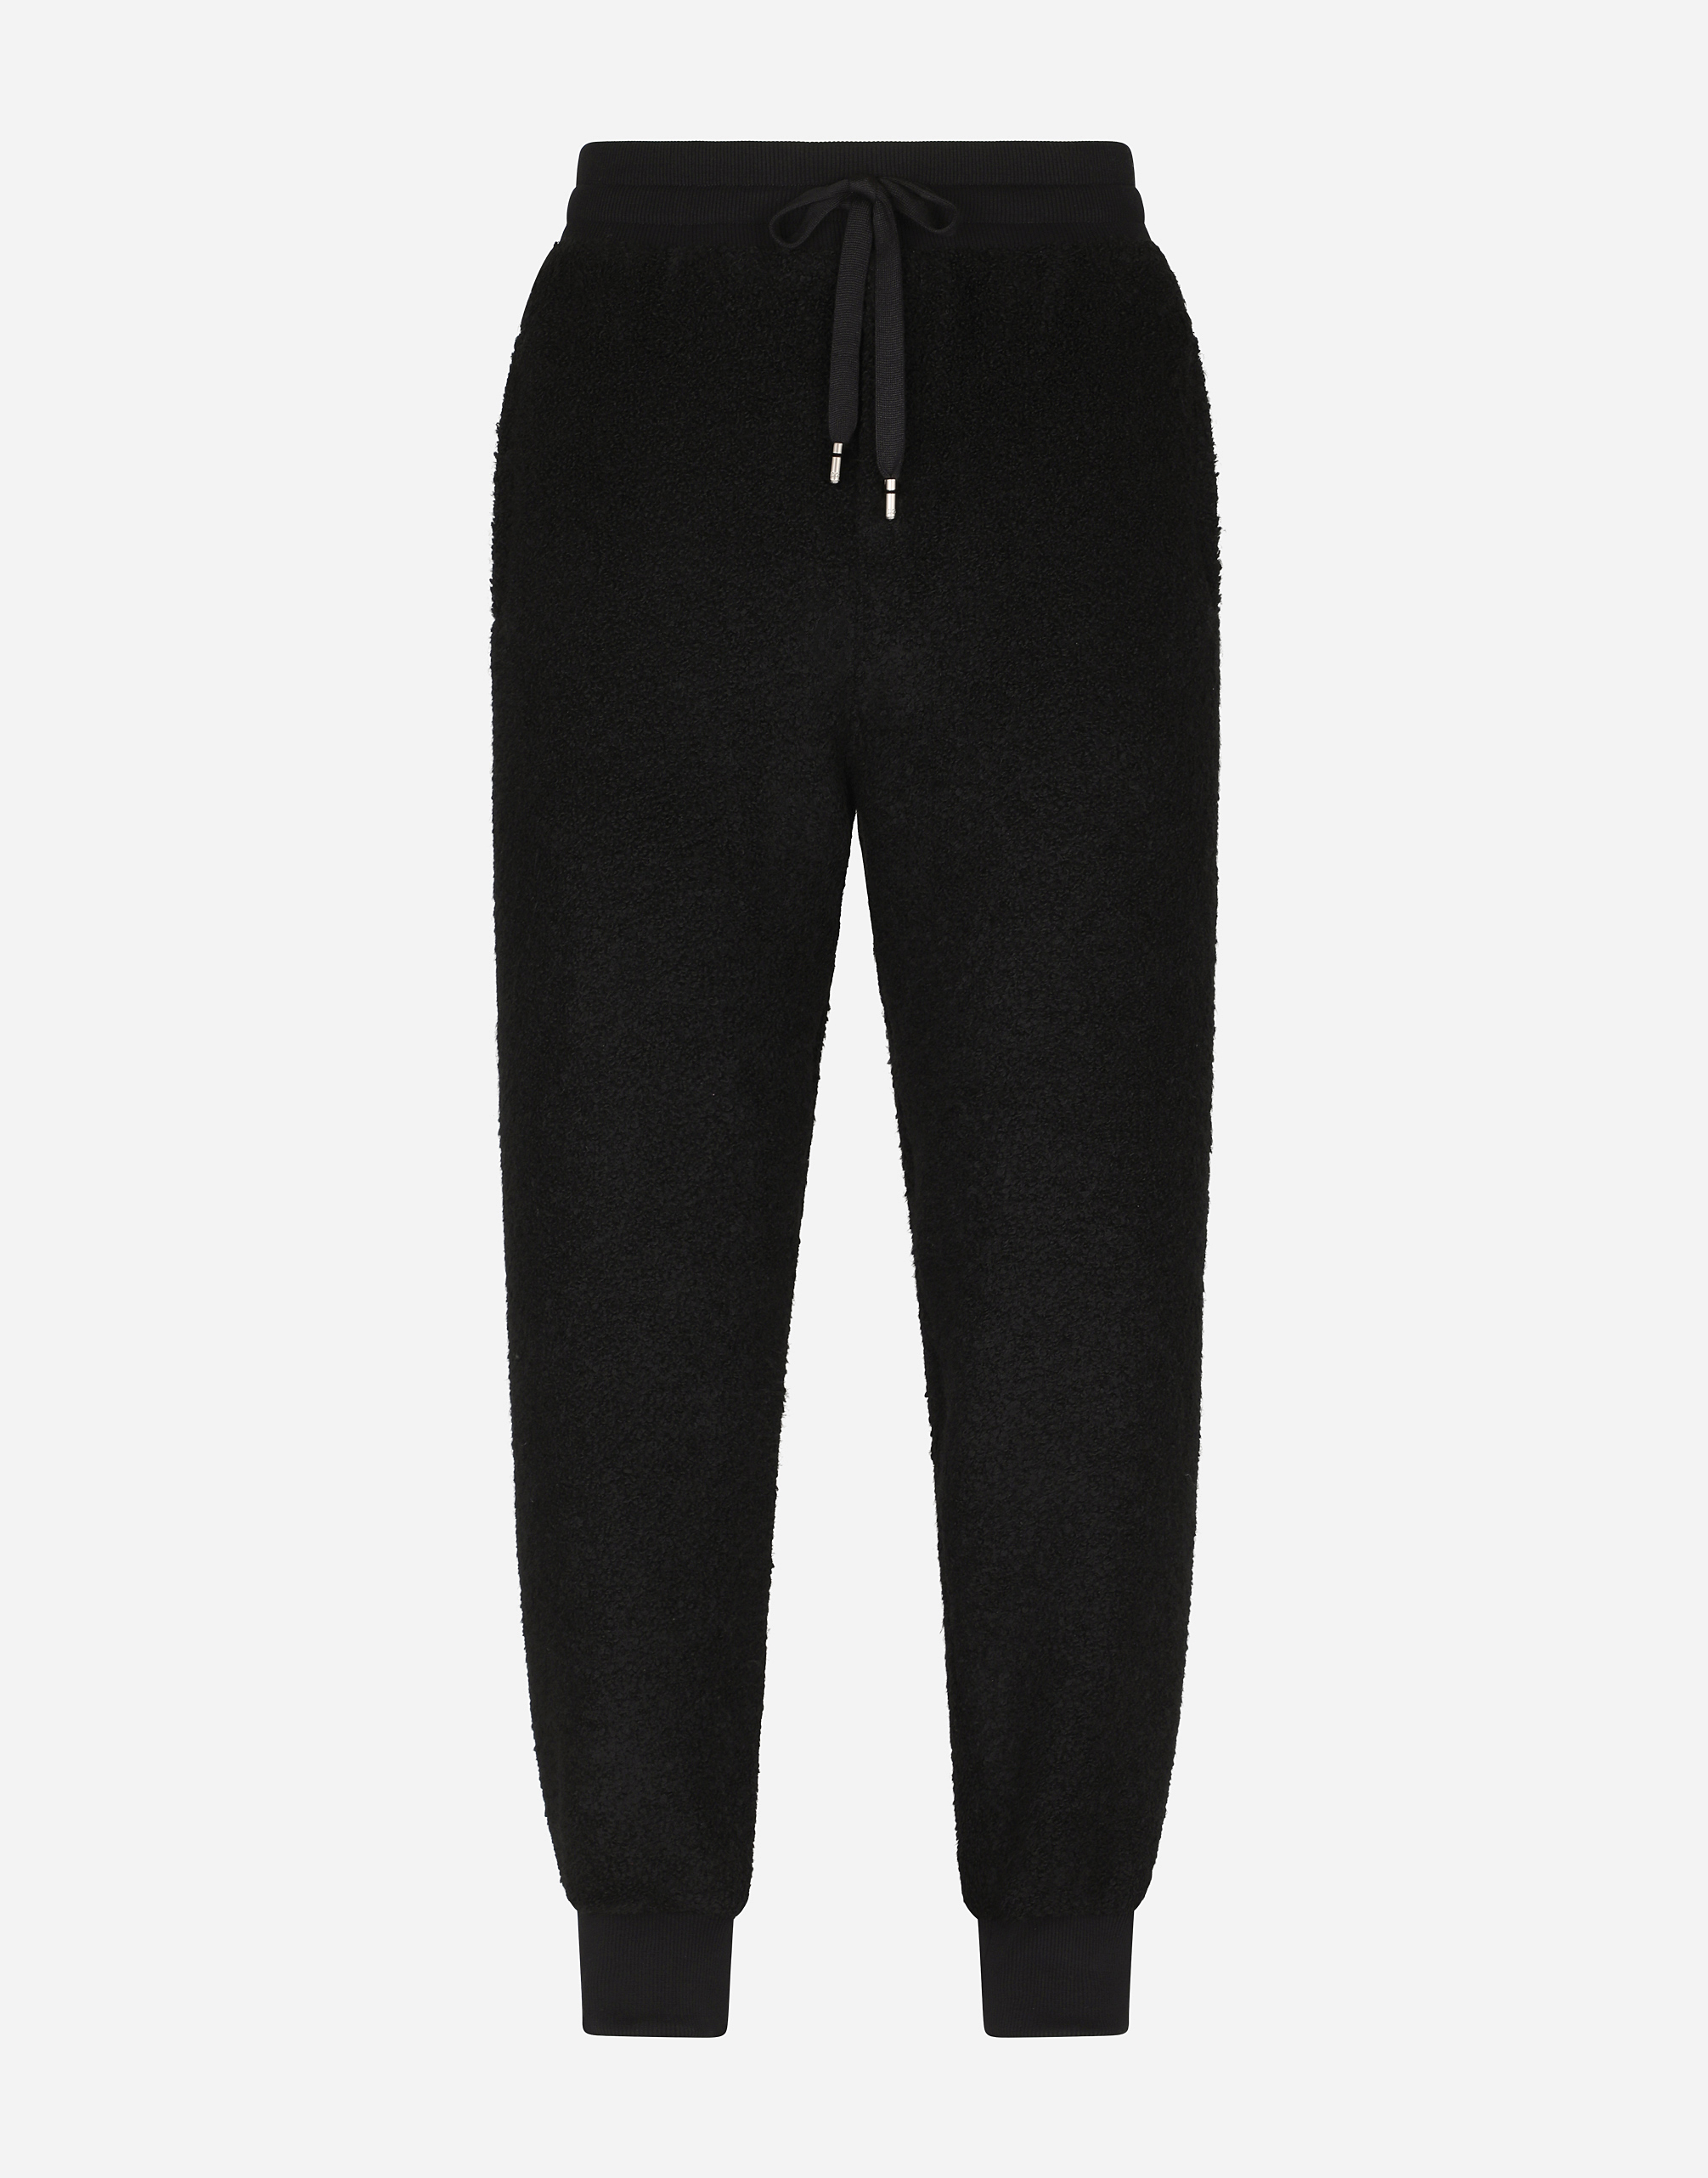 Bouclé jogging pants in Black